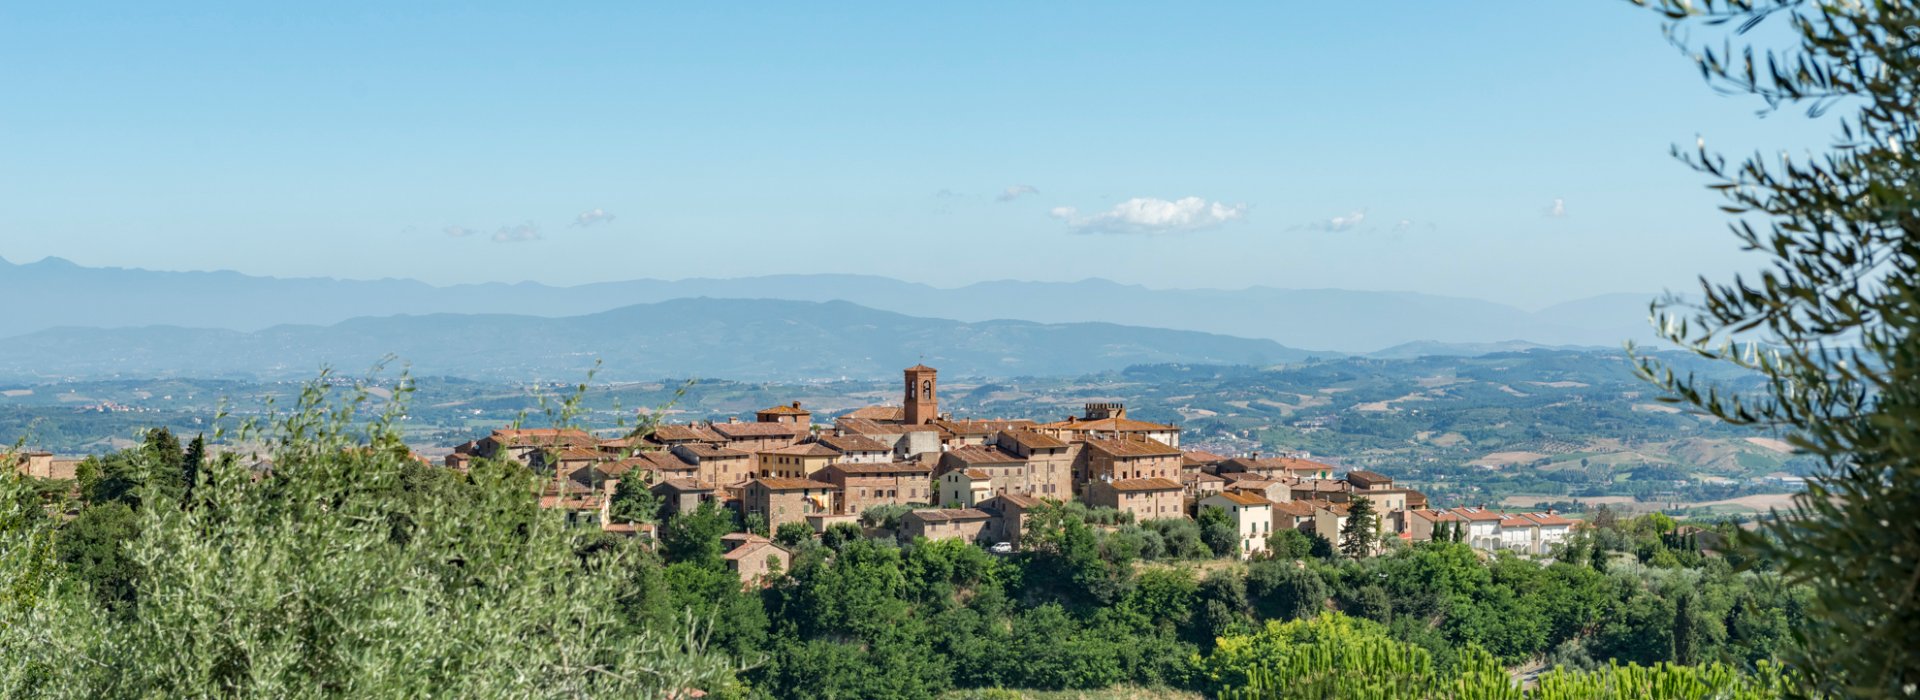 Un fine settimana slow a Gambassi Terme e nella Valdelsa, tra le provincie di Pisa e Firenze